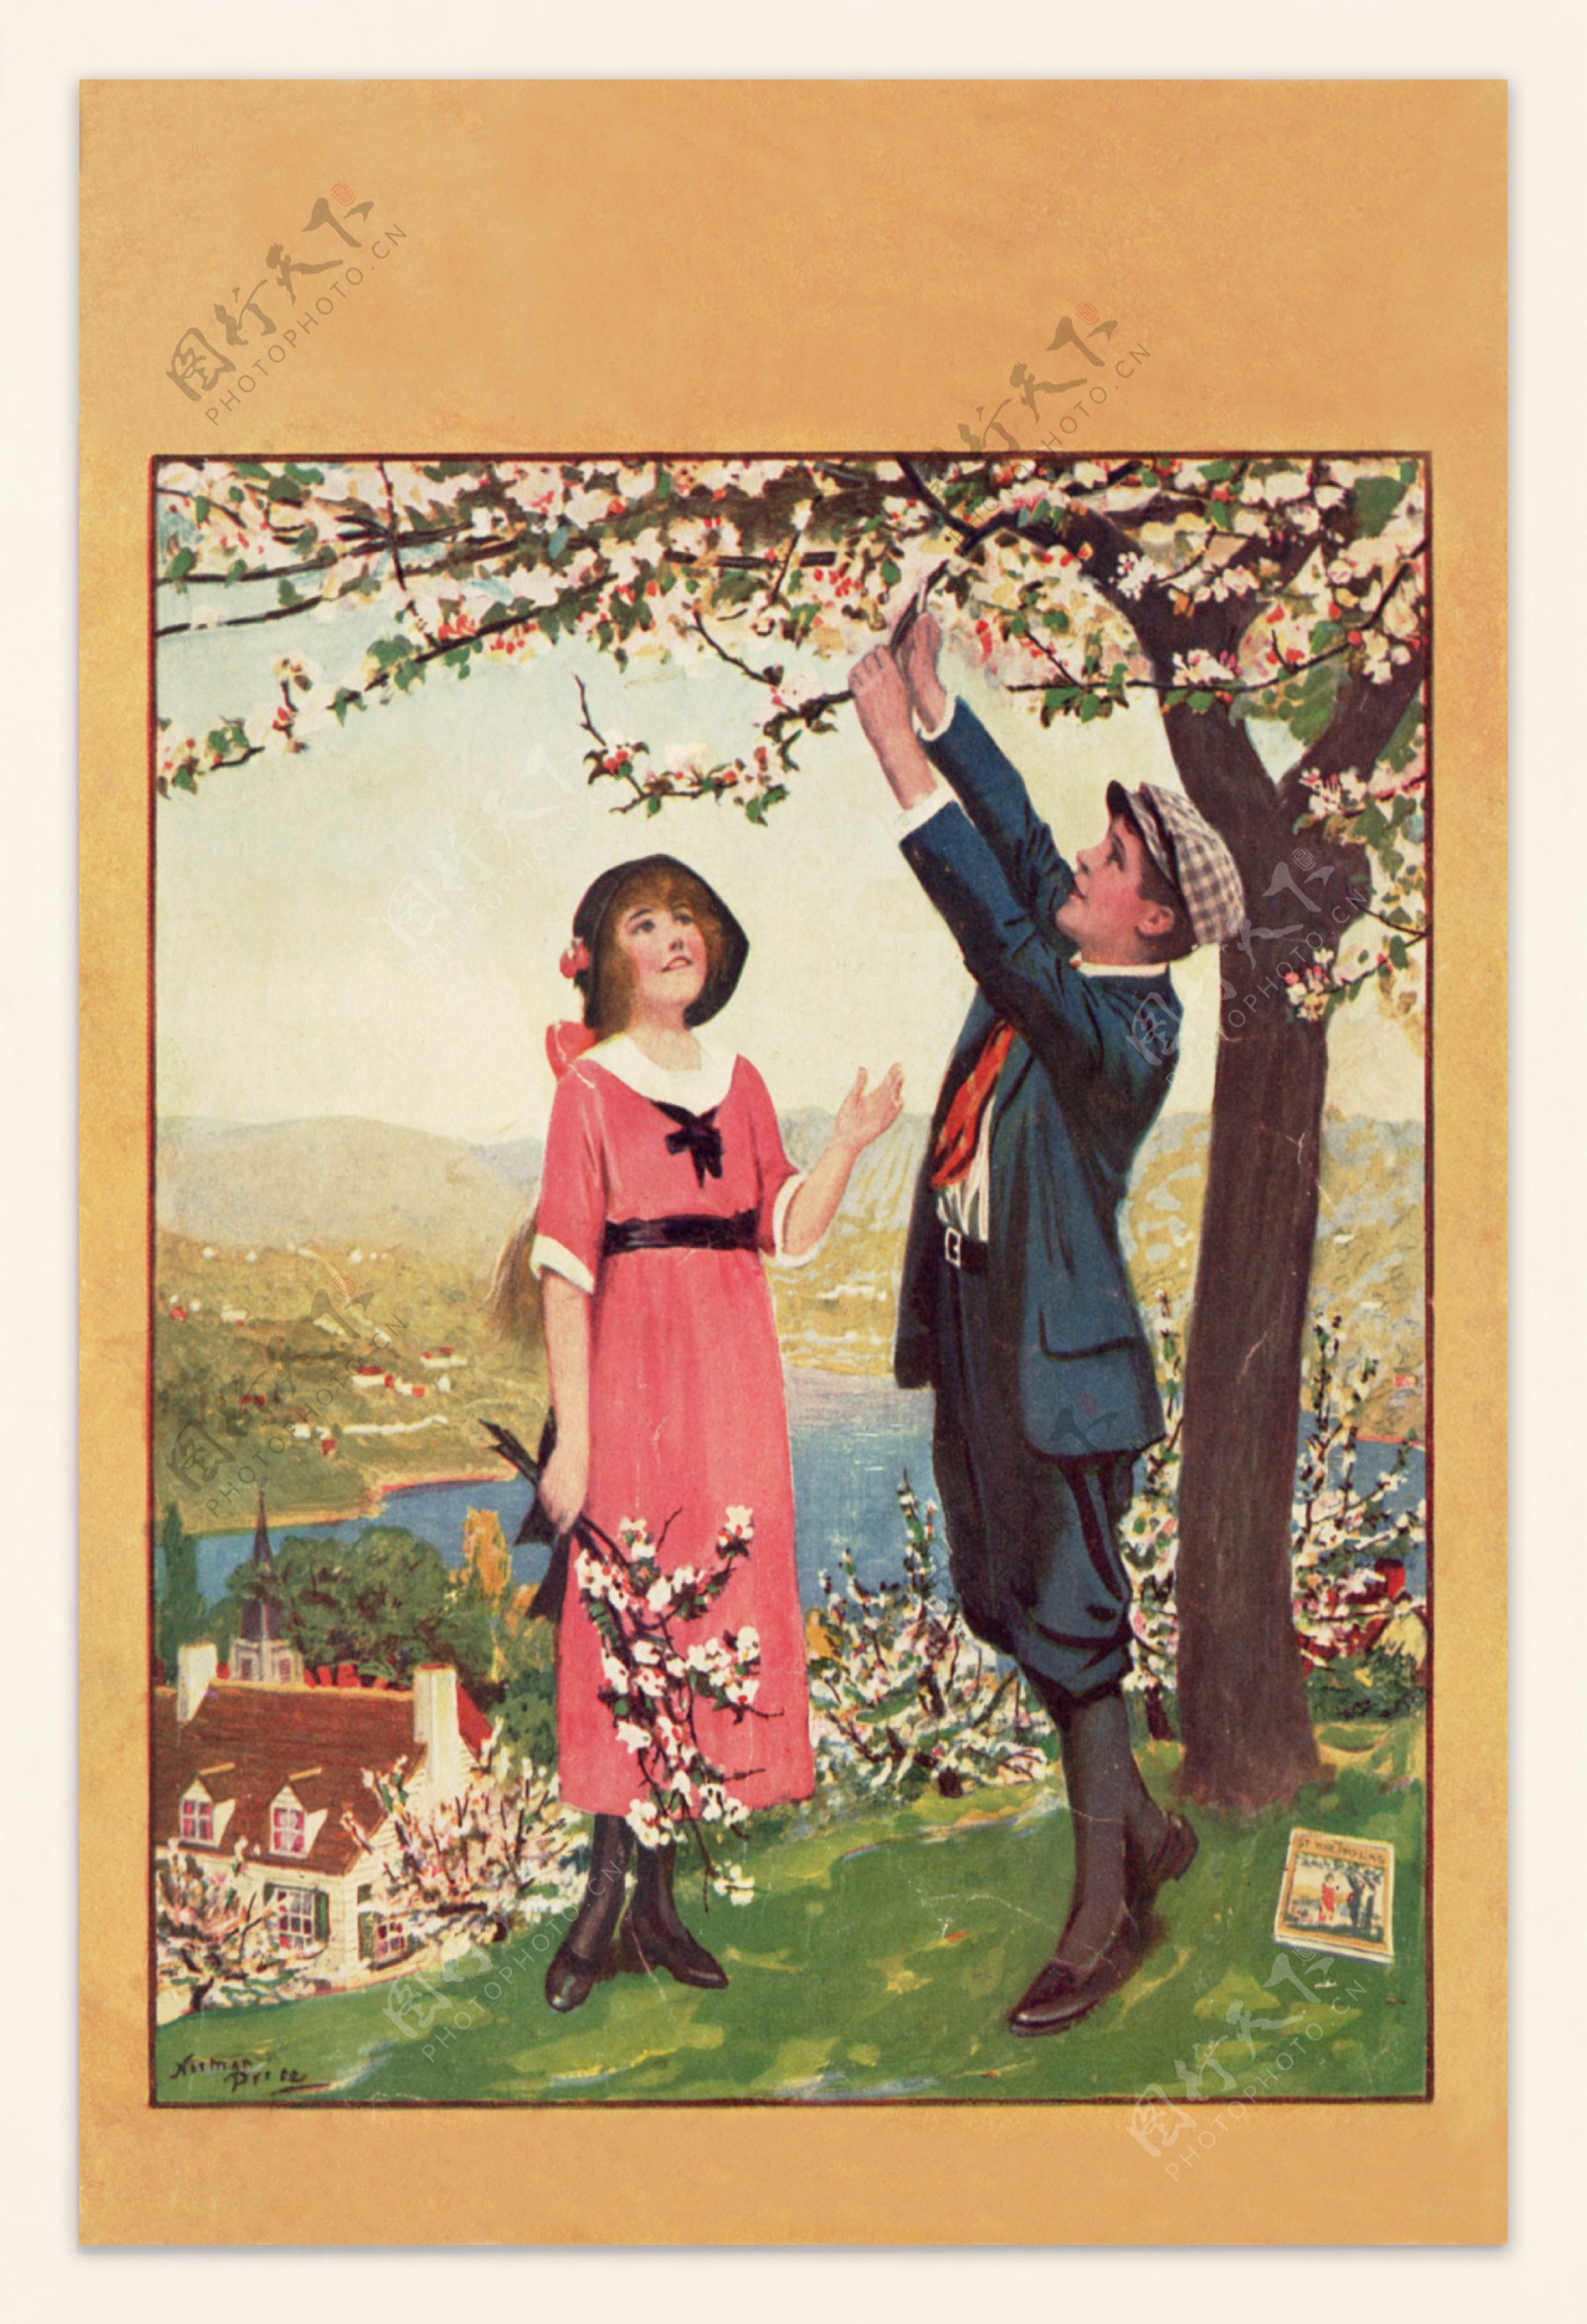 桃花树下的爱情图片